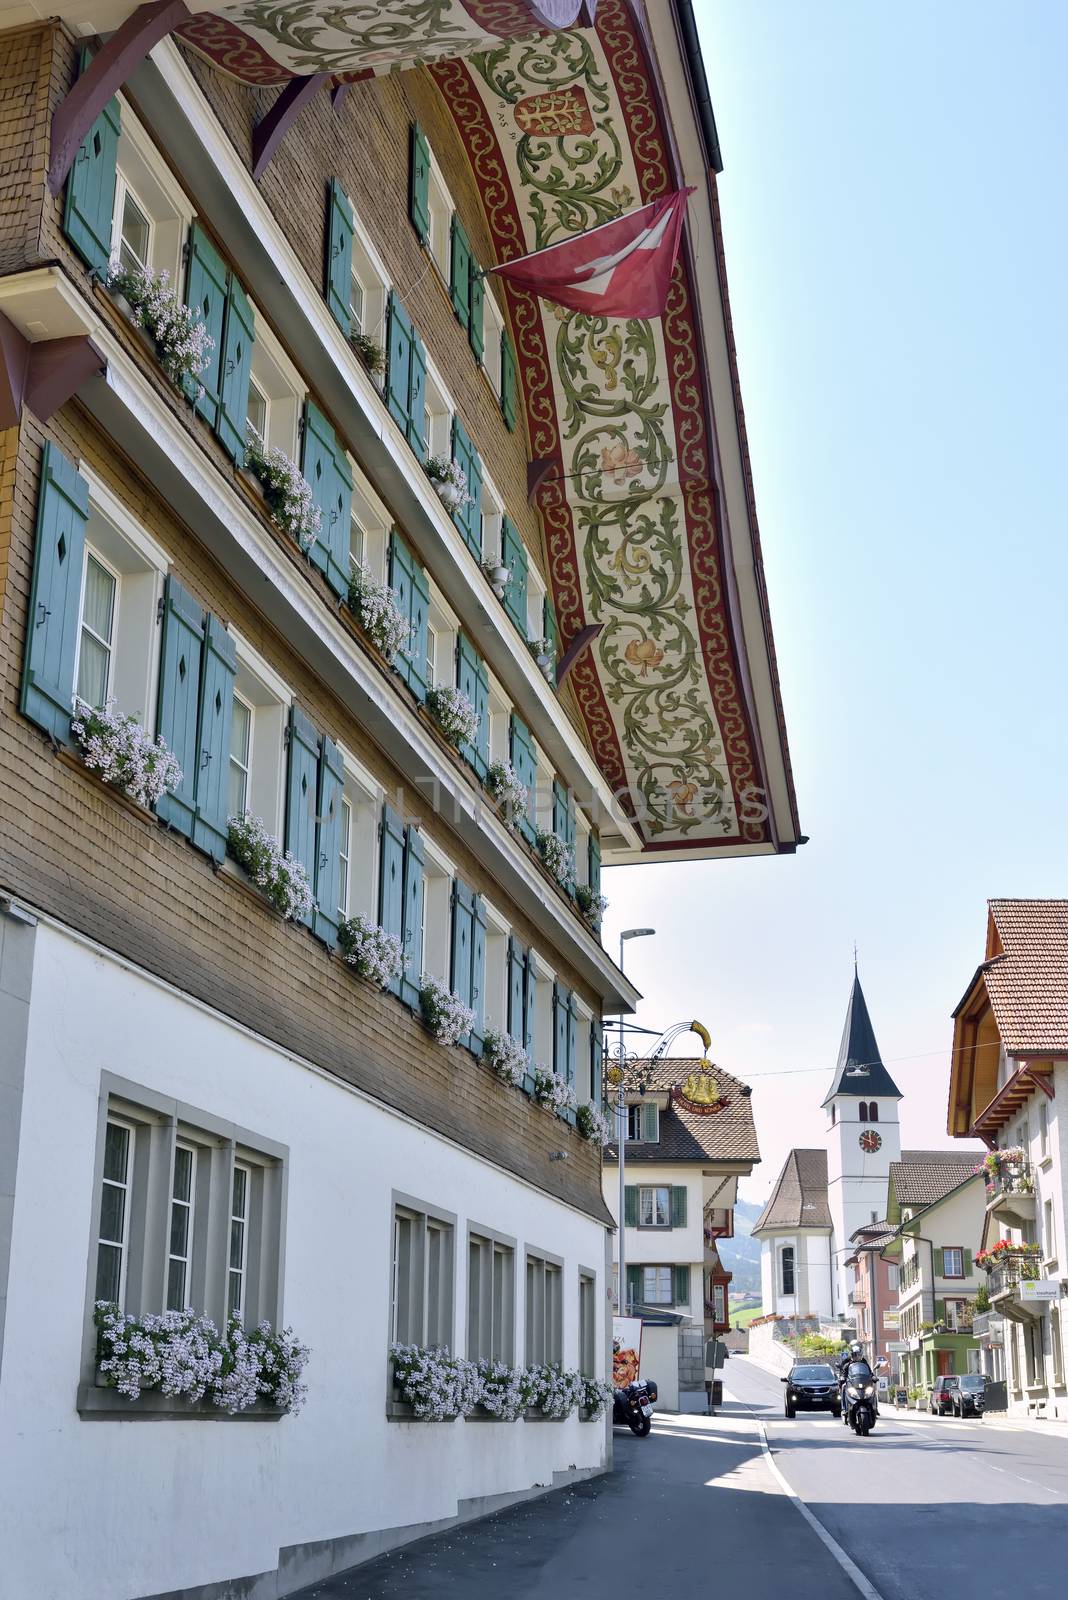 Hotel Drei Könige in Entlebuch Lucerna by mady70